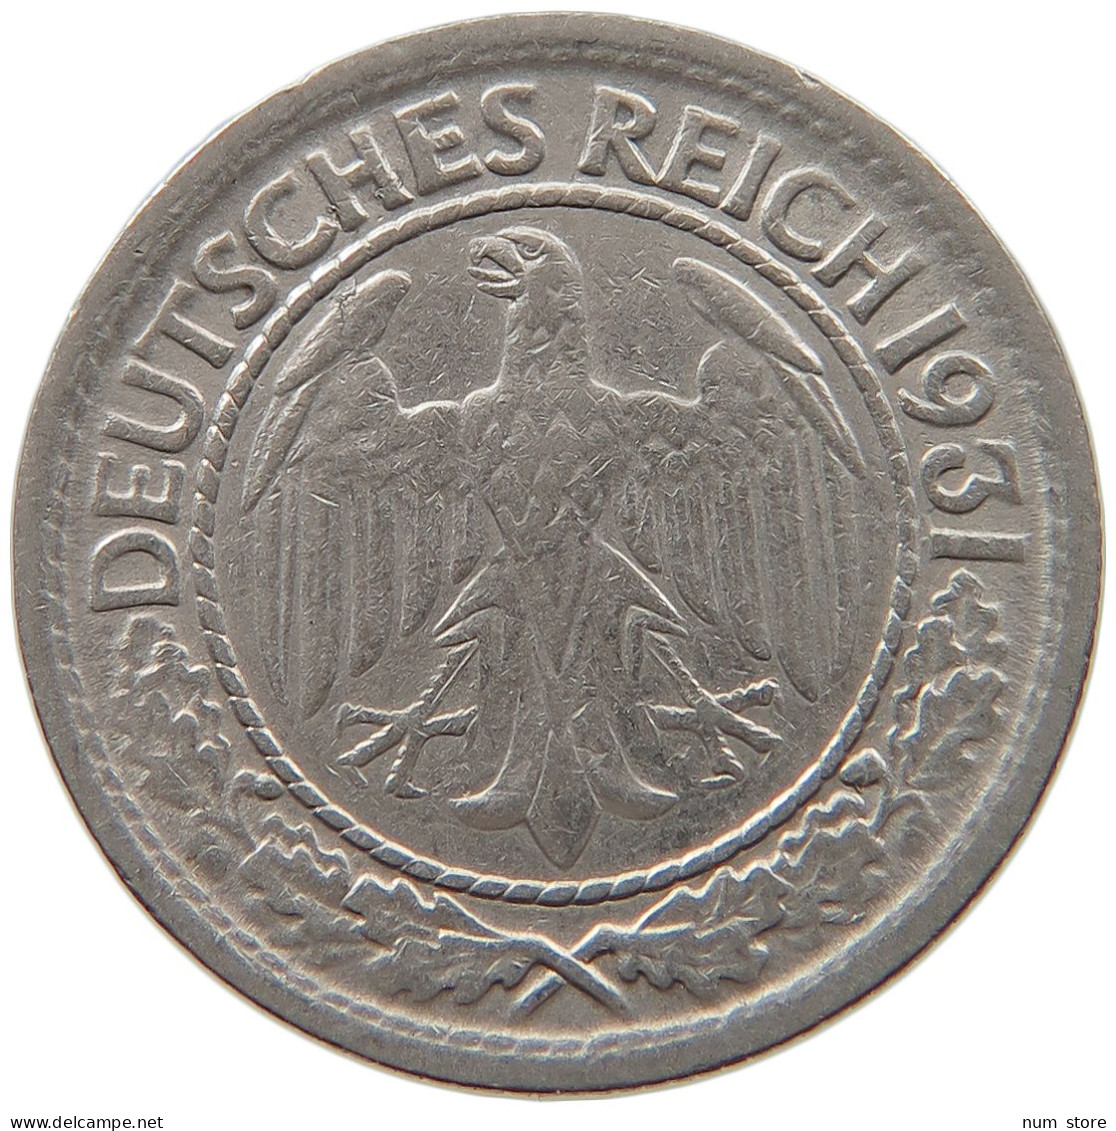 WEIMARER REPUBLIK 50 REICHSPFENNIG 1931 A  #MA 099486 - 50 Rentenpfennig & 50 Reichspfennig